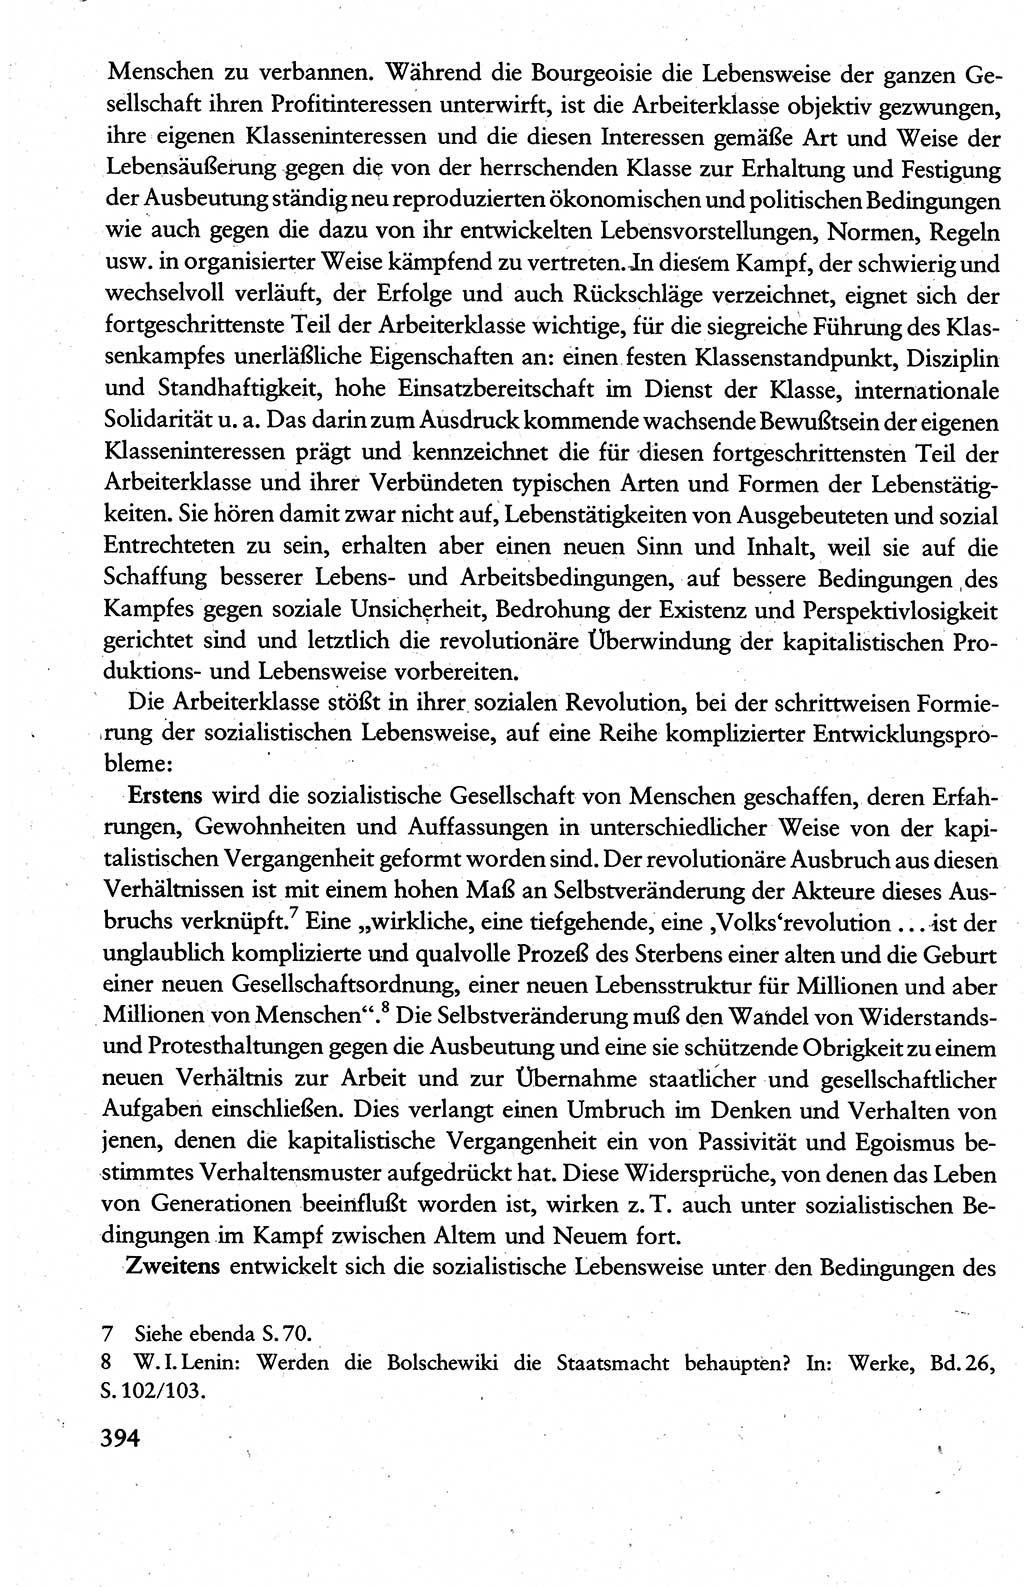 Wissenschaftlicher Kommunismus [Deutsche Demokratische Republik (DDR)], Lehrbuch für das marxistisch-leninistische Grundlagenstudium 1983, Seite 394 (Wiss. Komm. DDR Lb. 1983, S. 394)